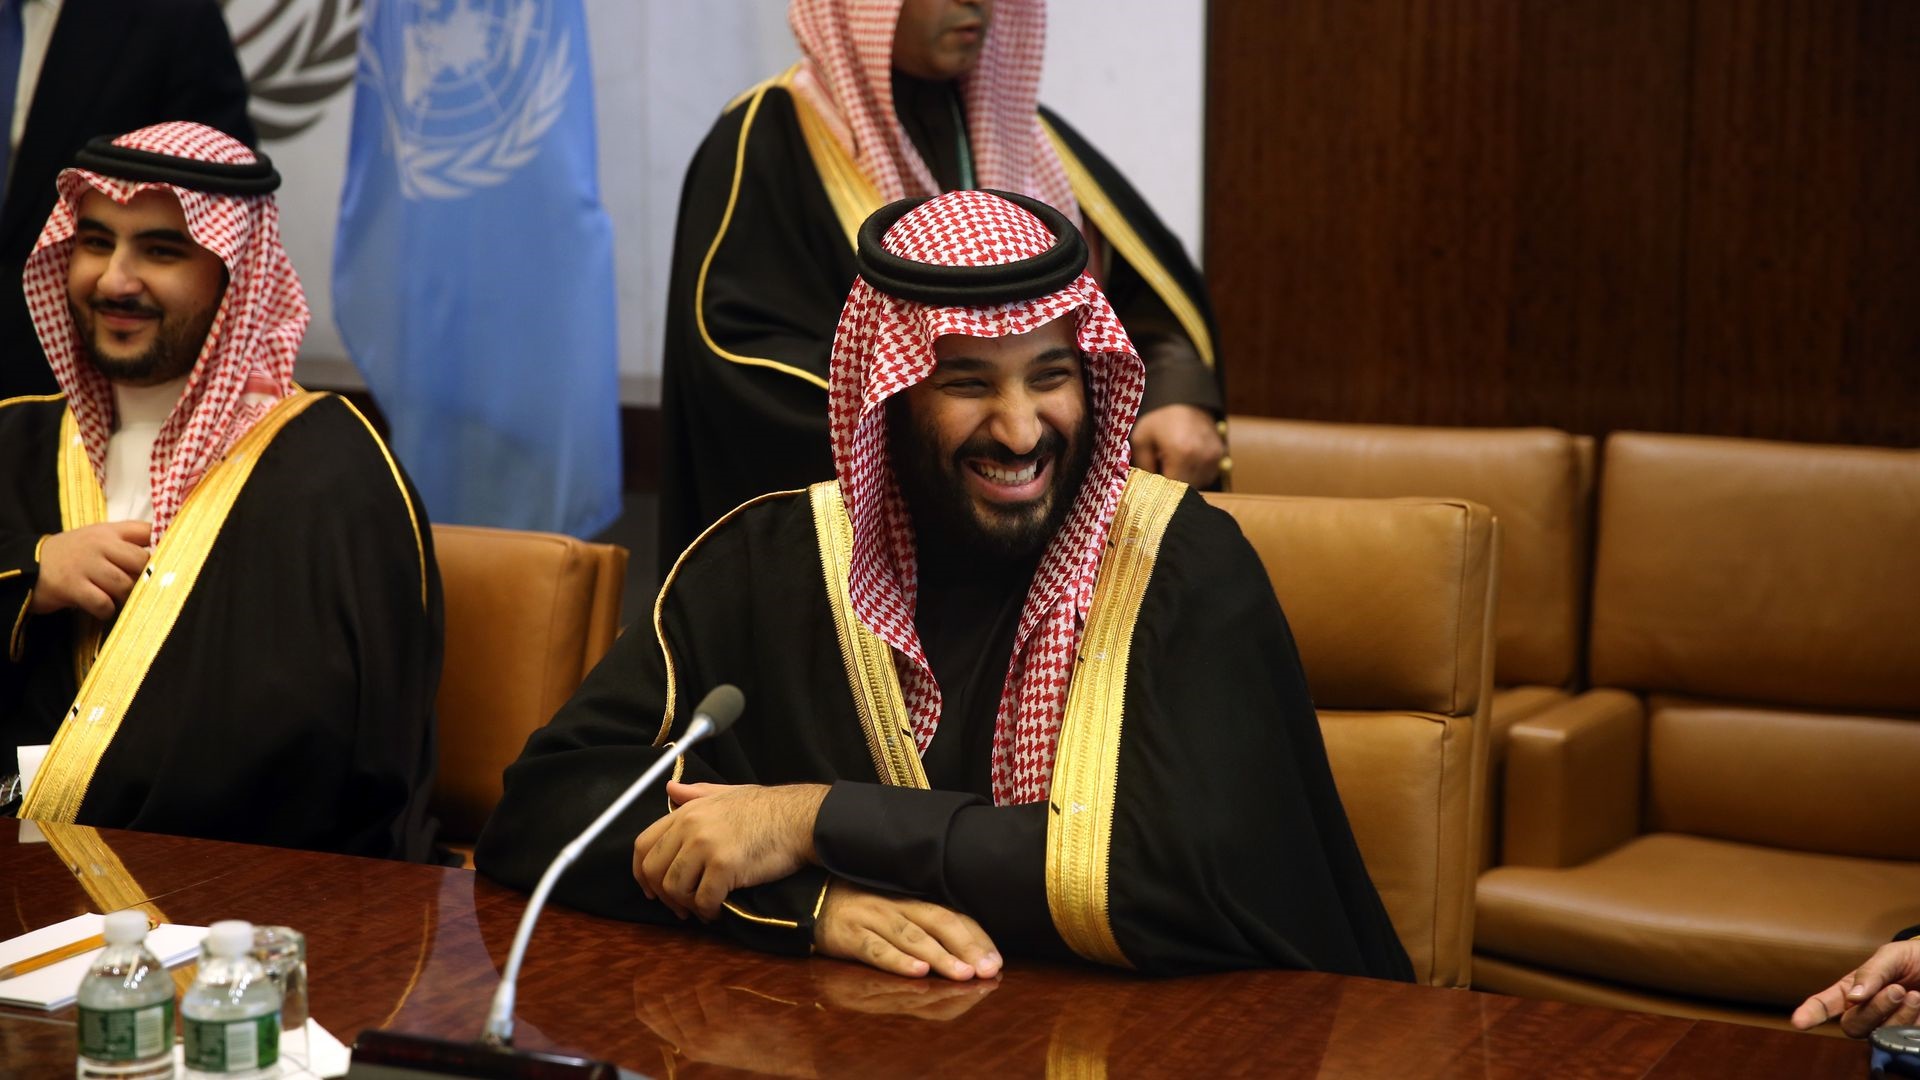 دیدار محرمانه ولیعهد سعودی با یک هیئت صهیونیستی